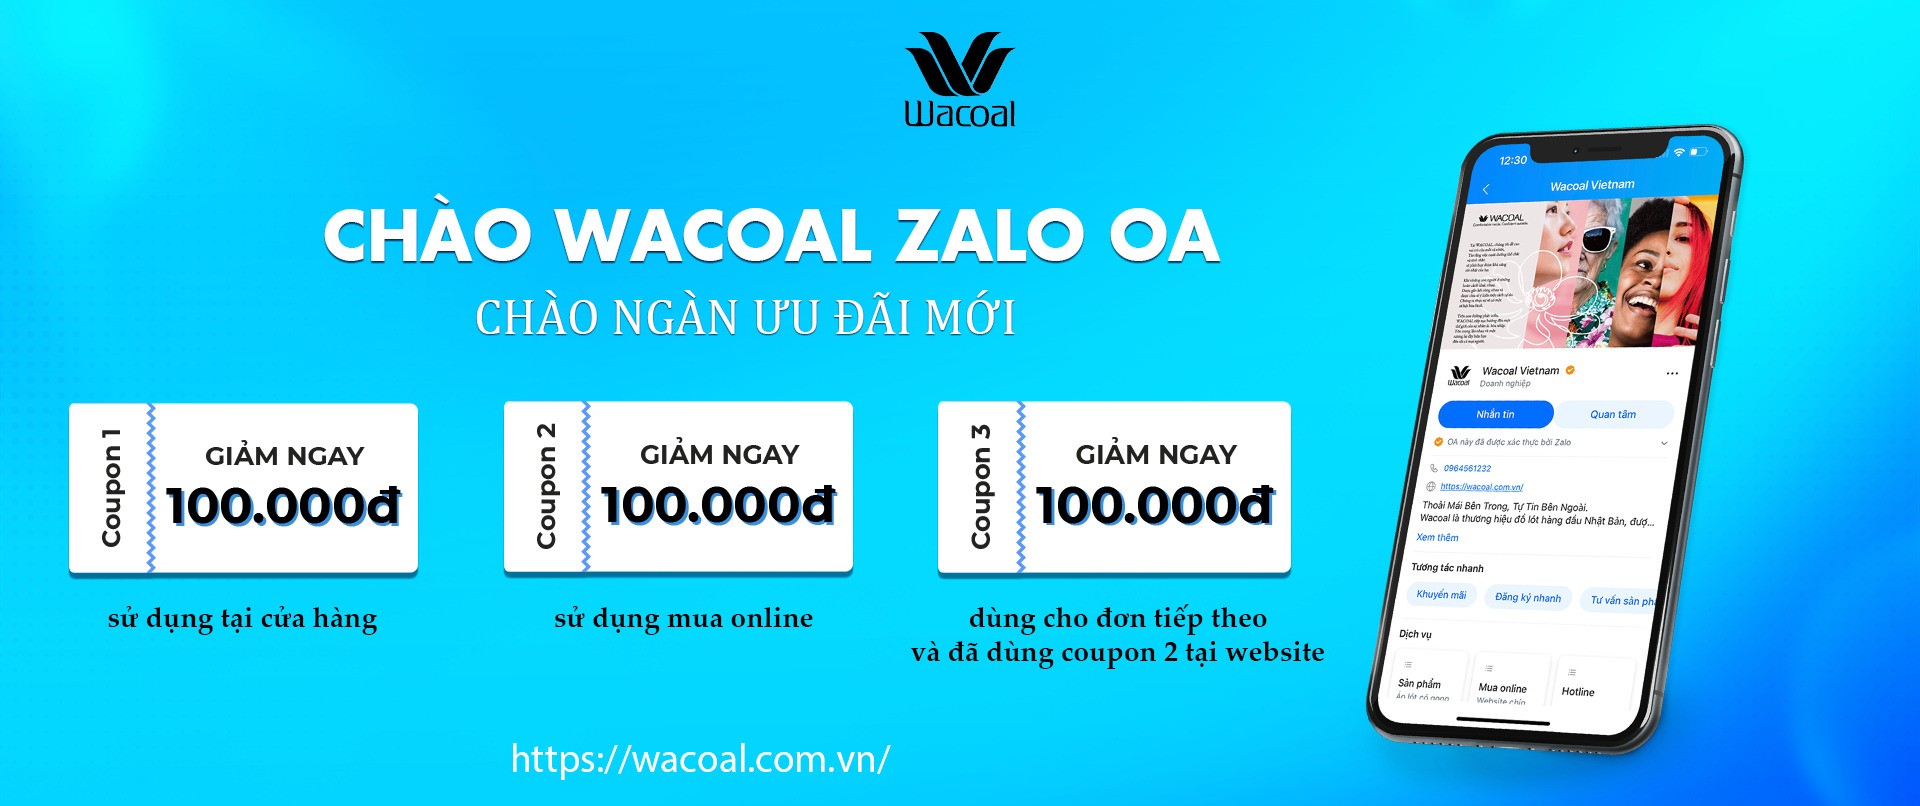 Chào đón Wacoal trên Zalo Official Account (ZaloOA)